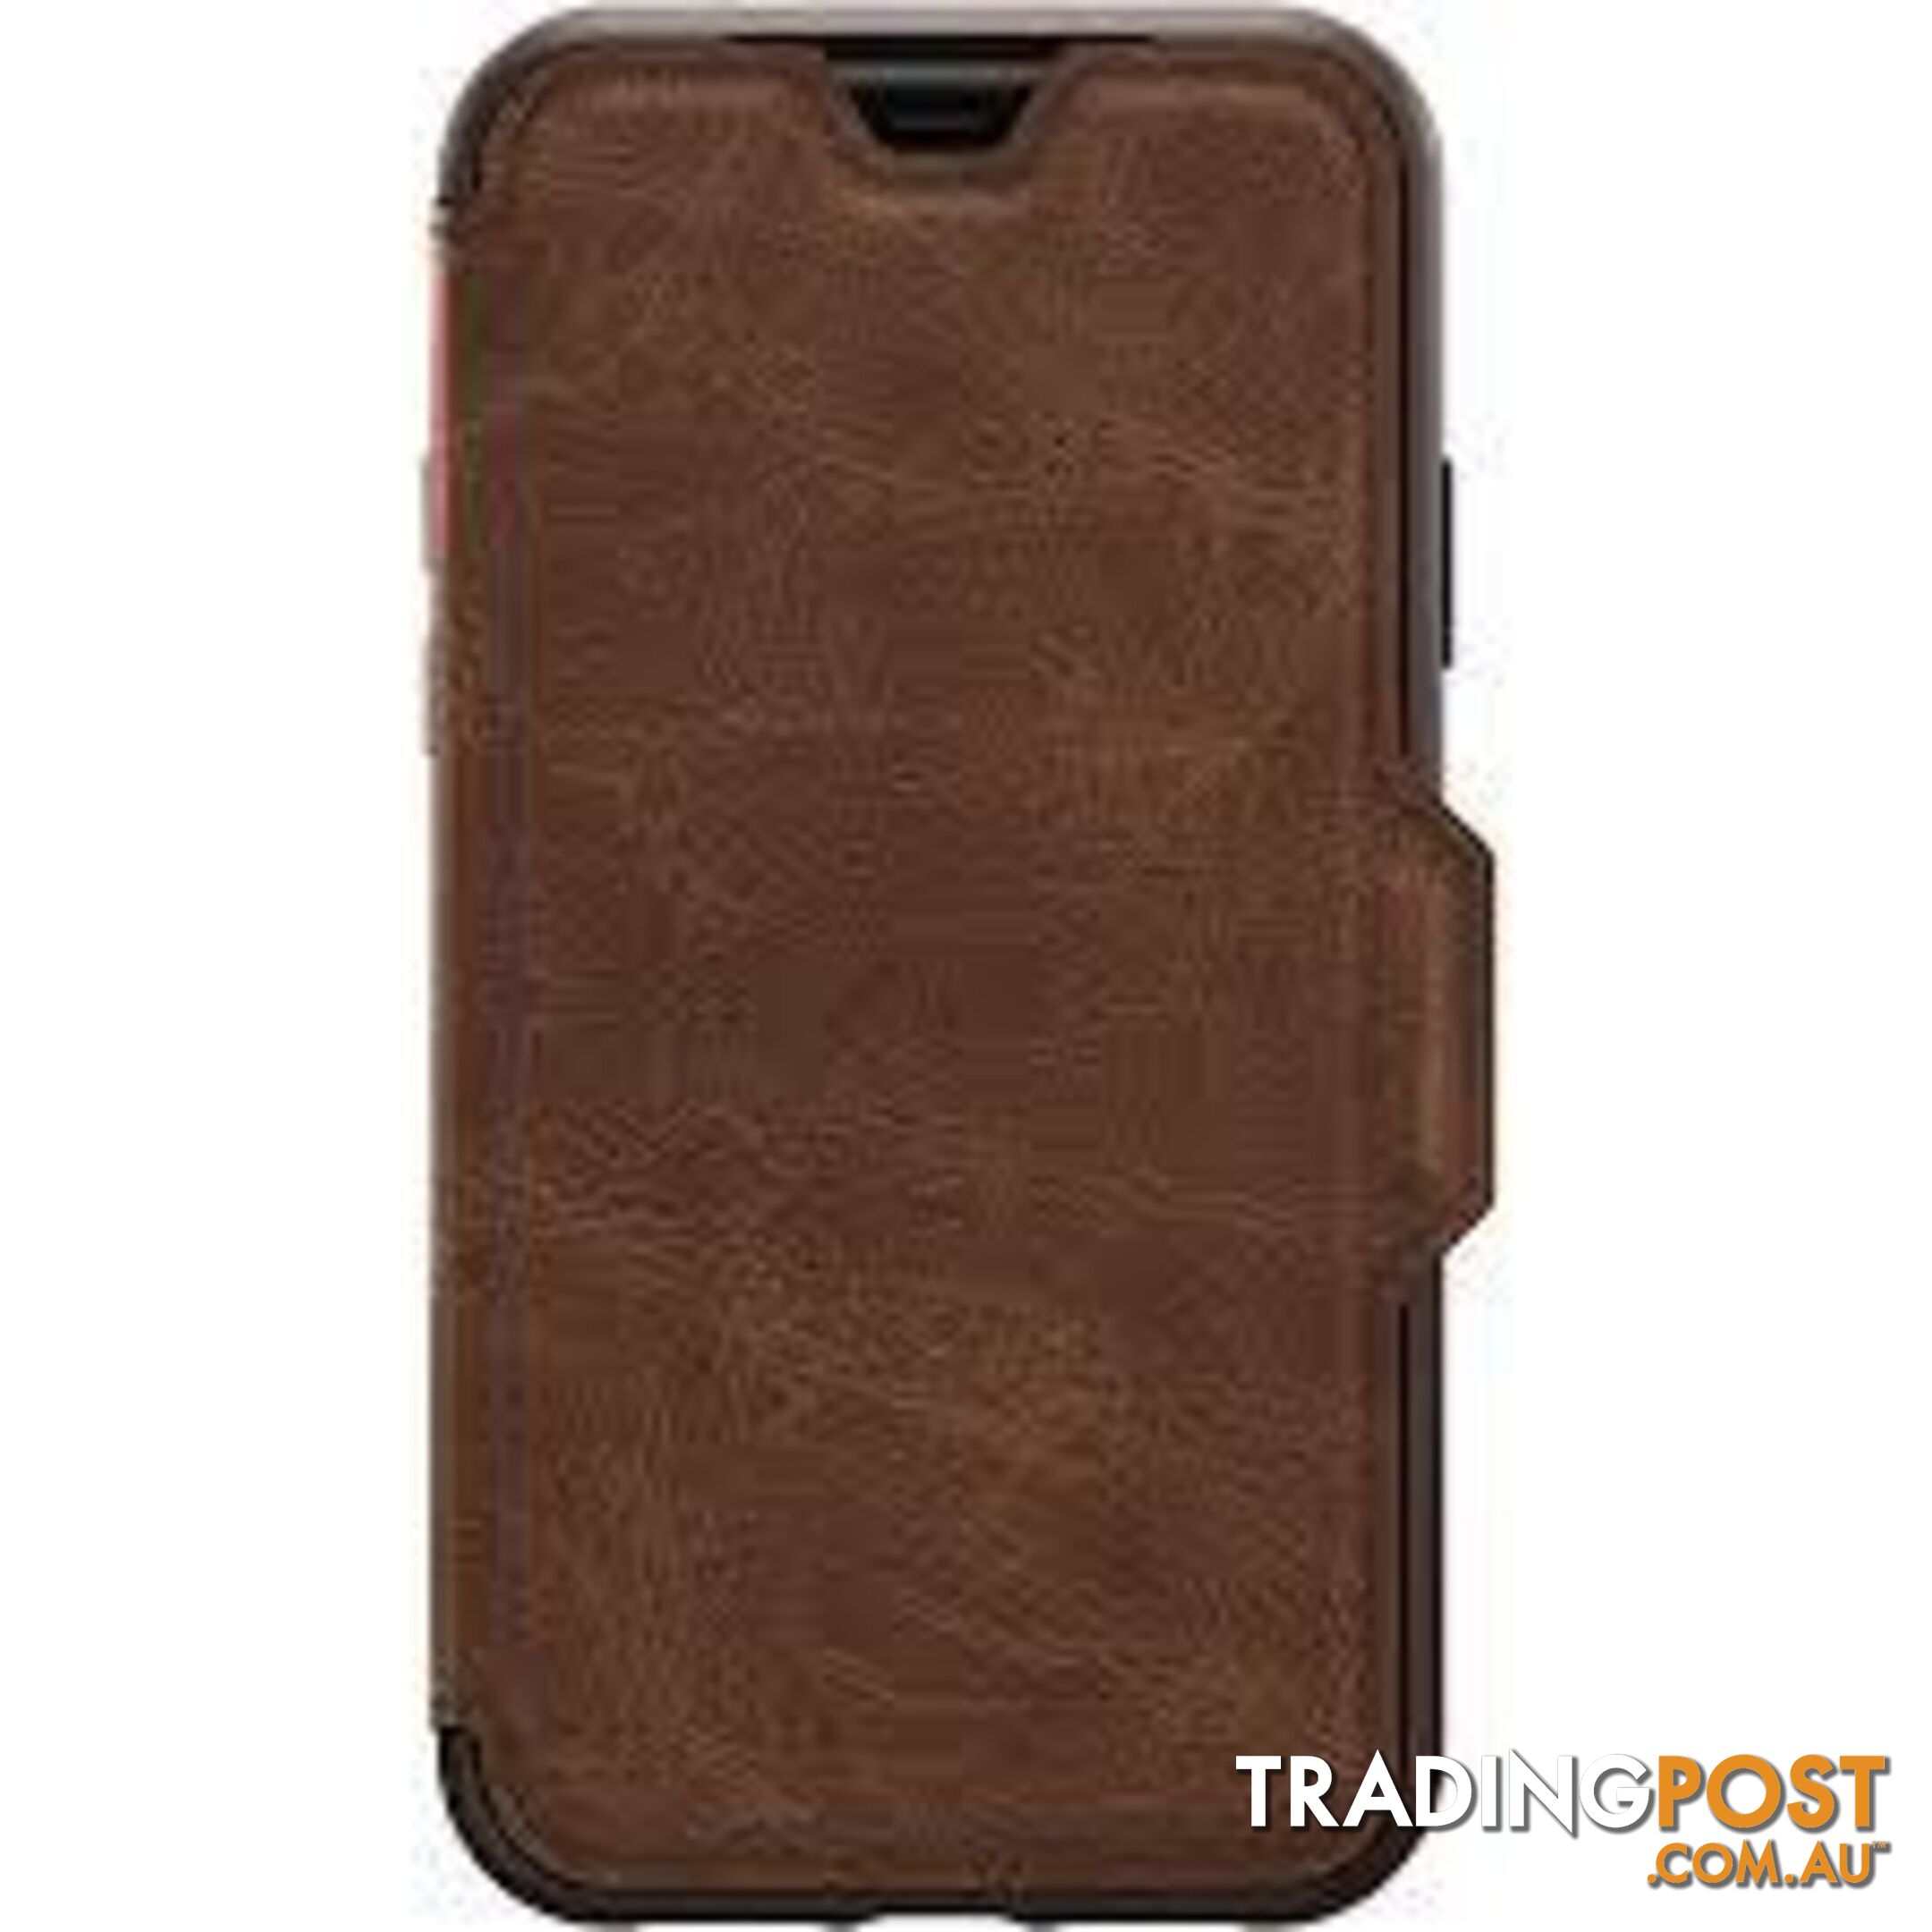 Otterbox Strada Case For iPhone 11 Pro Max - OtterBox - Espresso